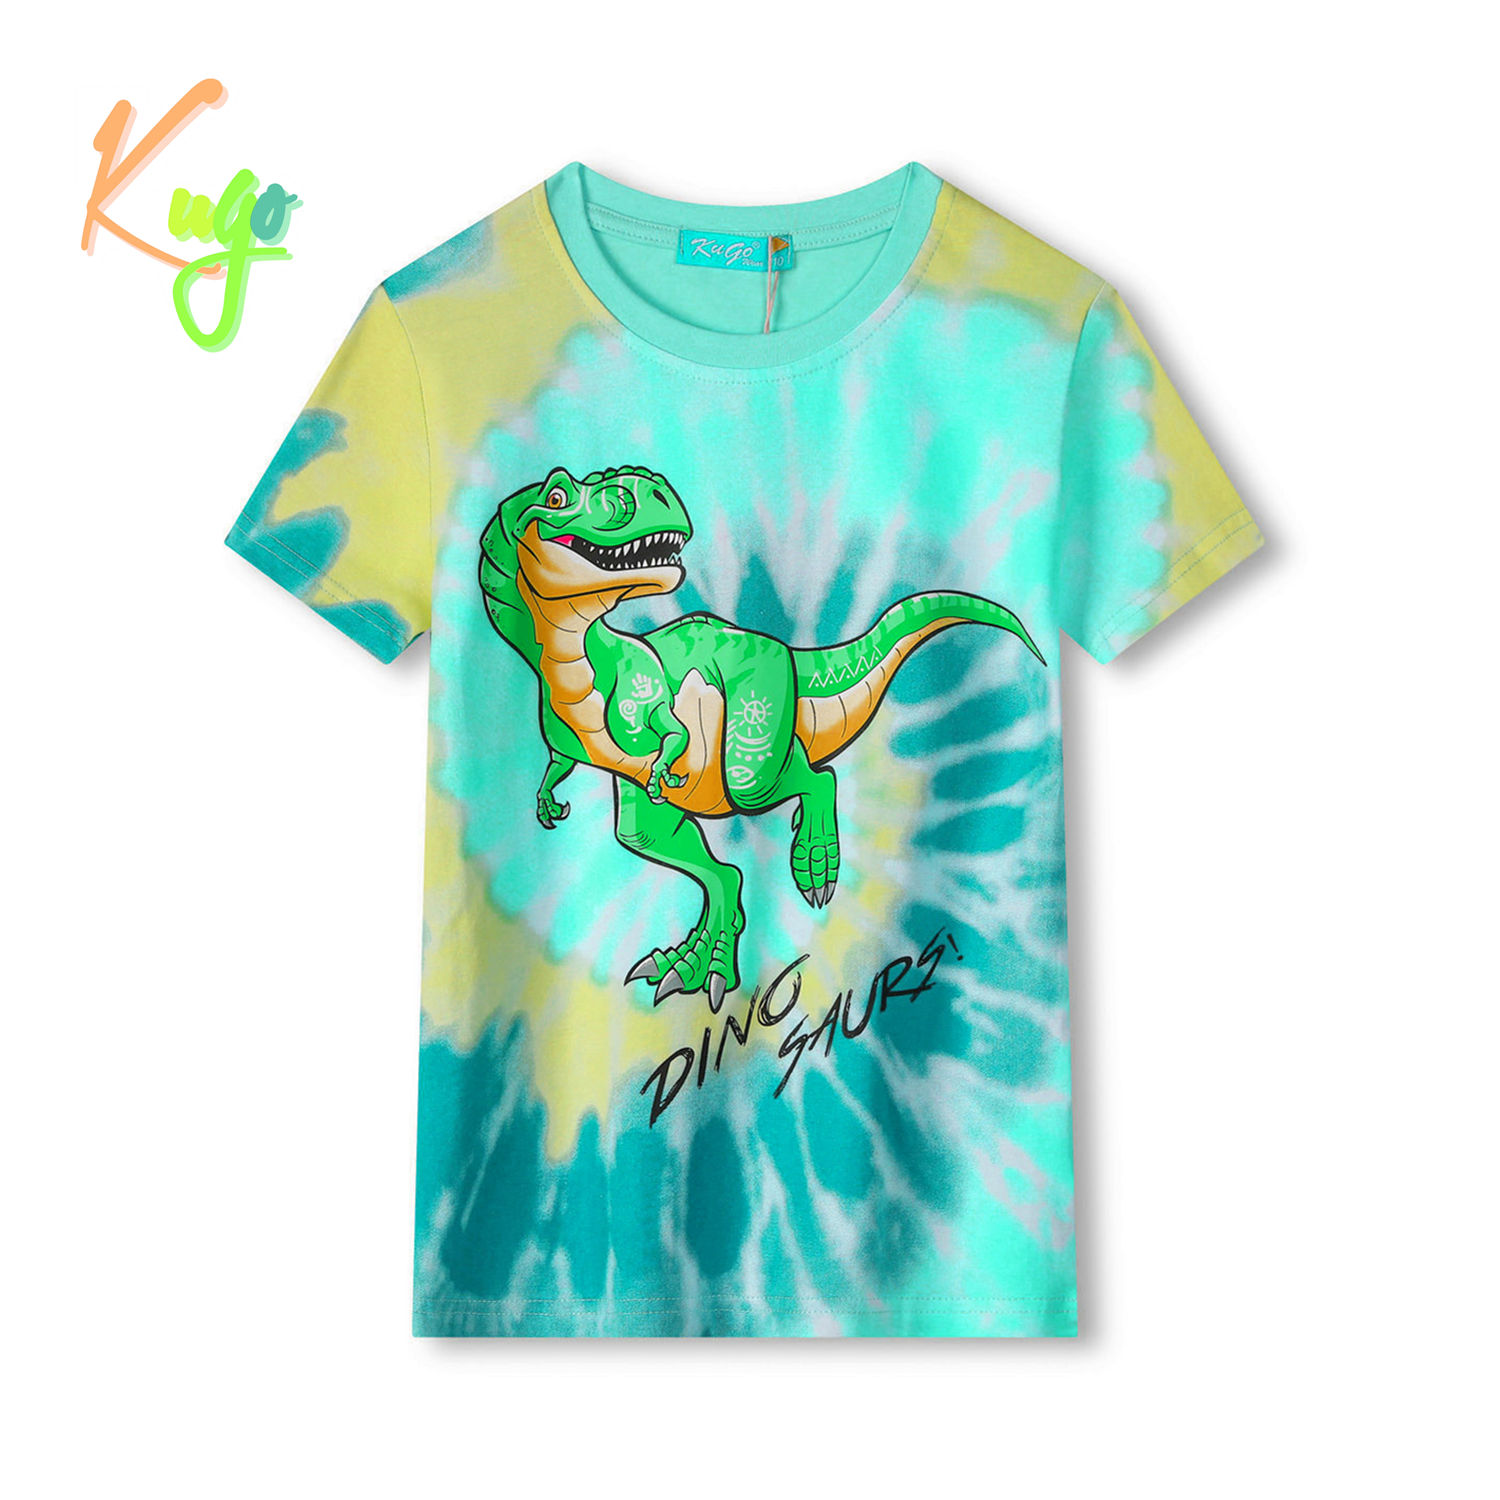 Chlapecké tričko - KUGO FC0301, tyrkysová / oranžový dinosaurus Barva: Tyrkysová, Velikost: 128